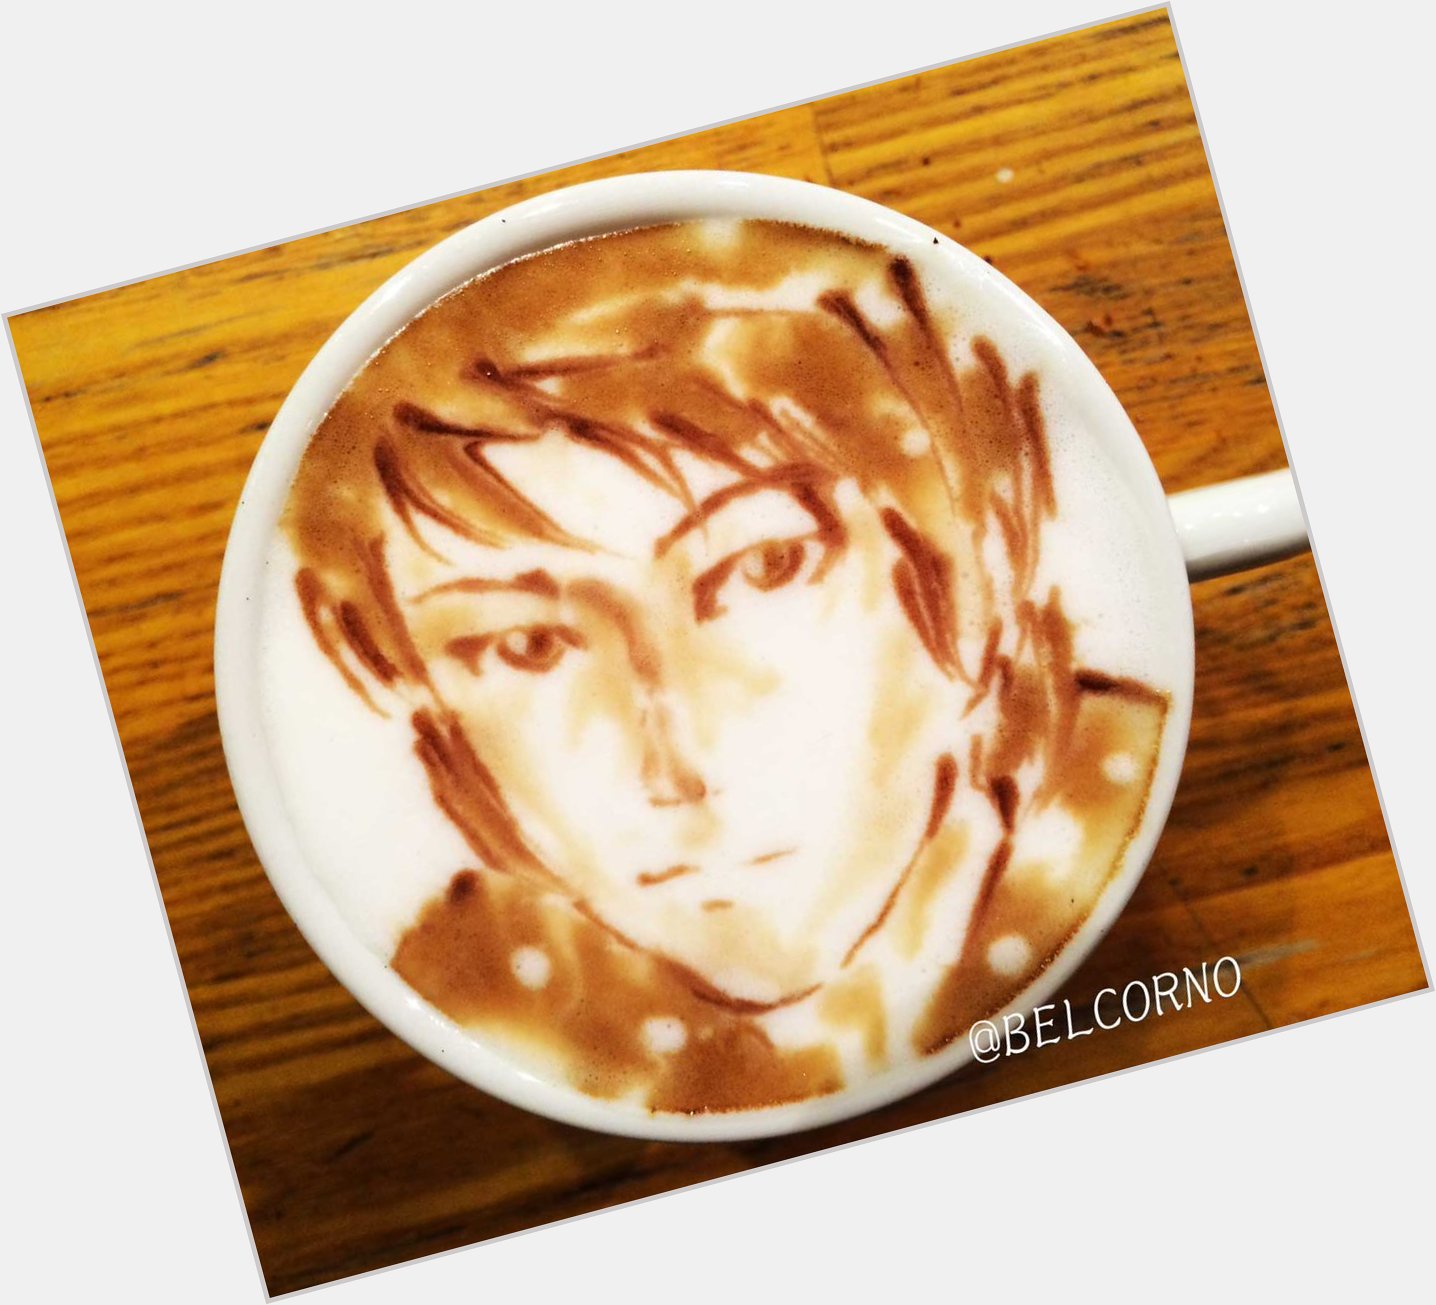              LatteArt Takehito Koyasu           Happy Birthday!  